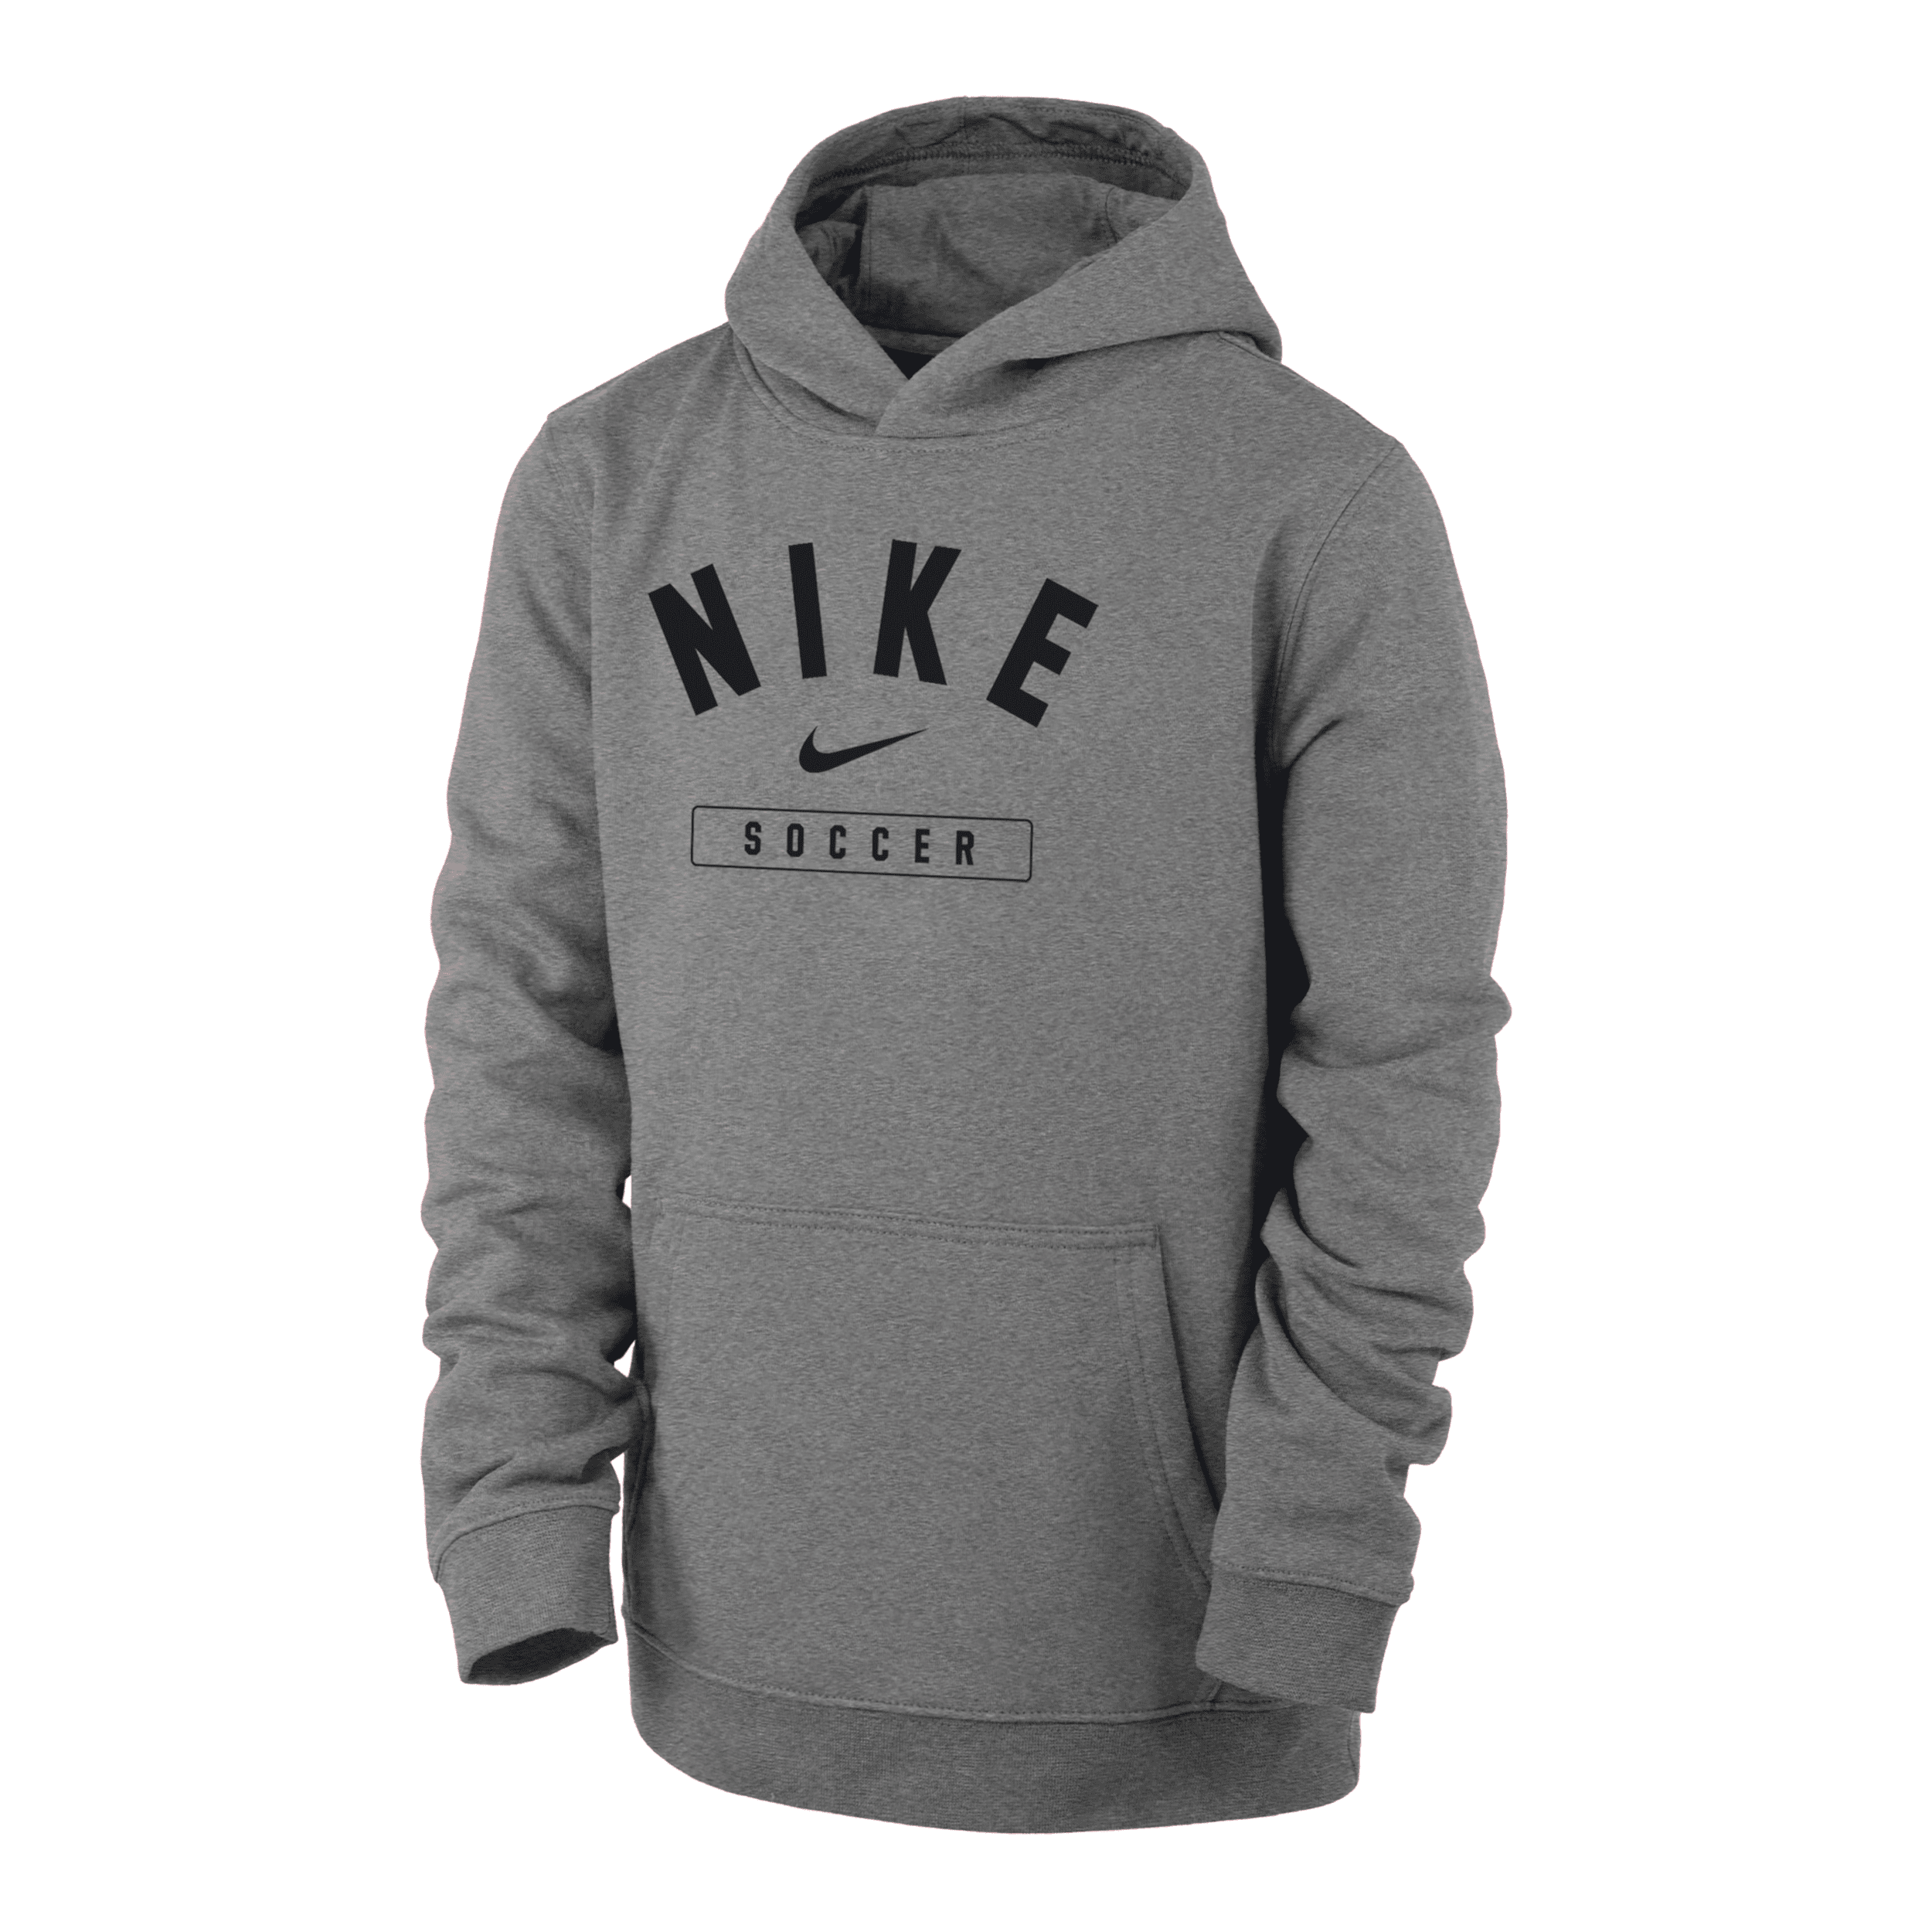 Nike Soccer Big Kids' (boys') Pullover Hoodie In Grey